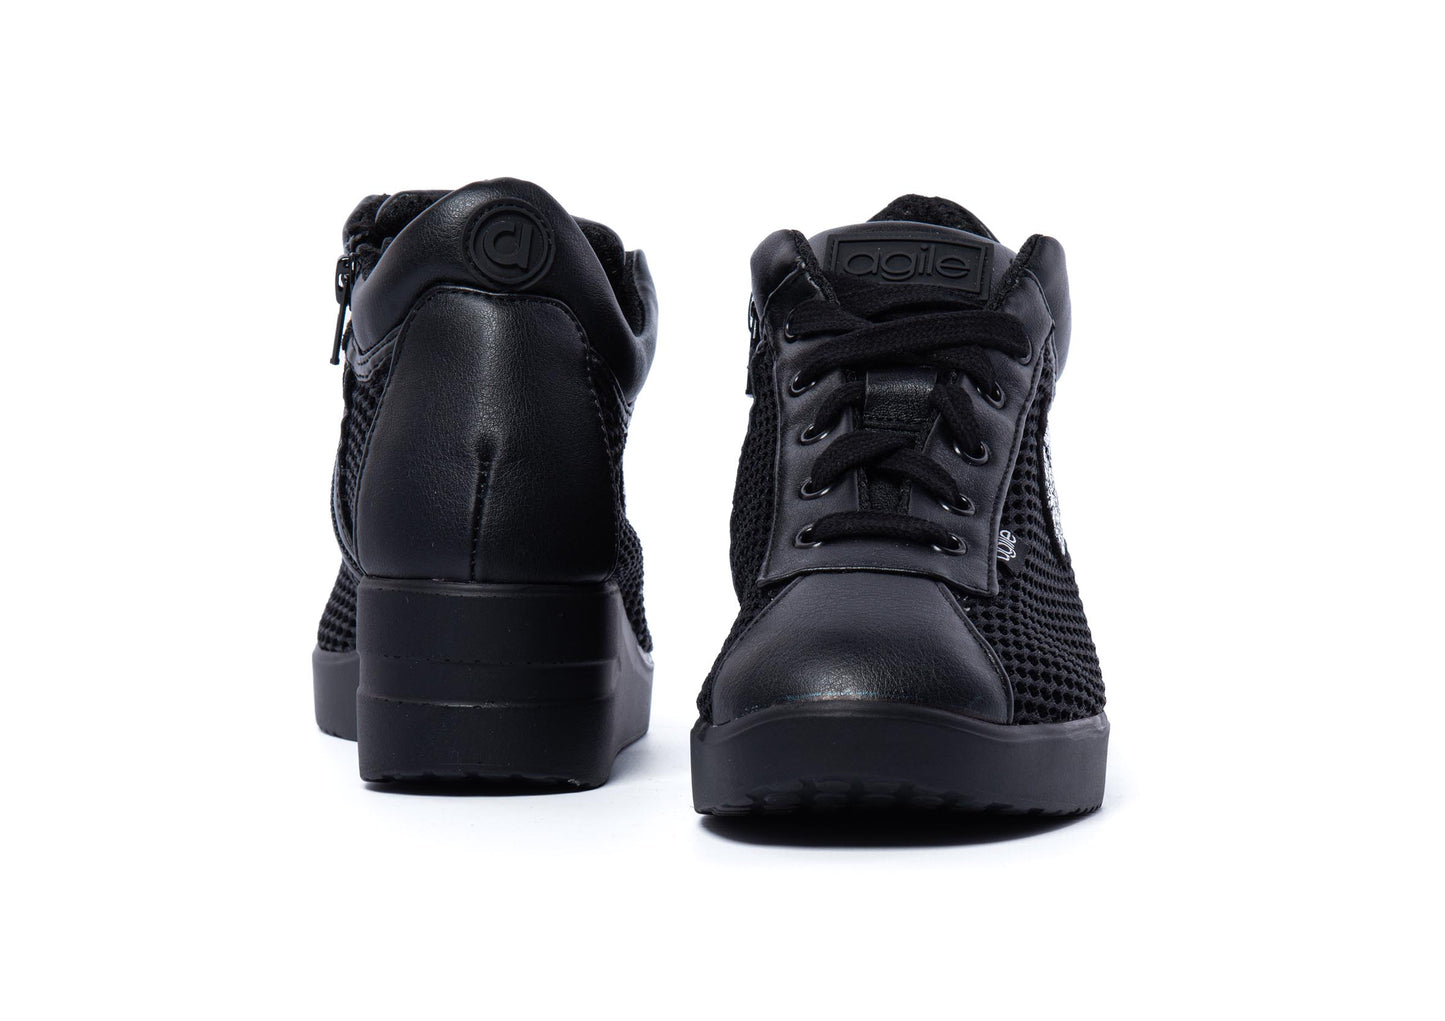 Sneakers Nero Traforato - Agile